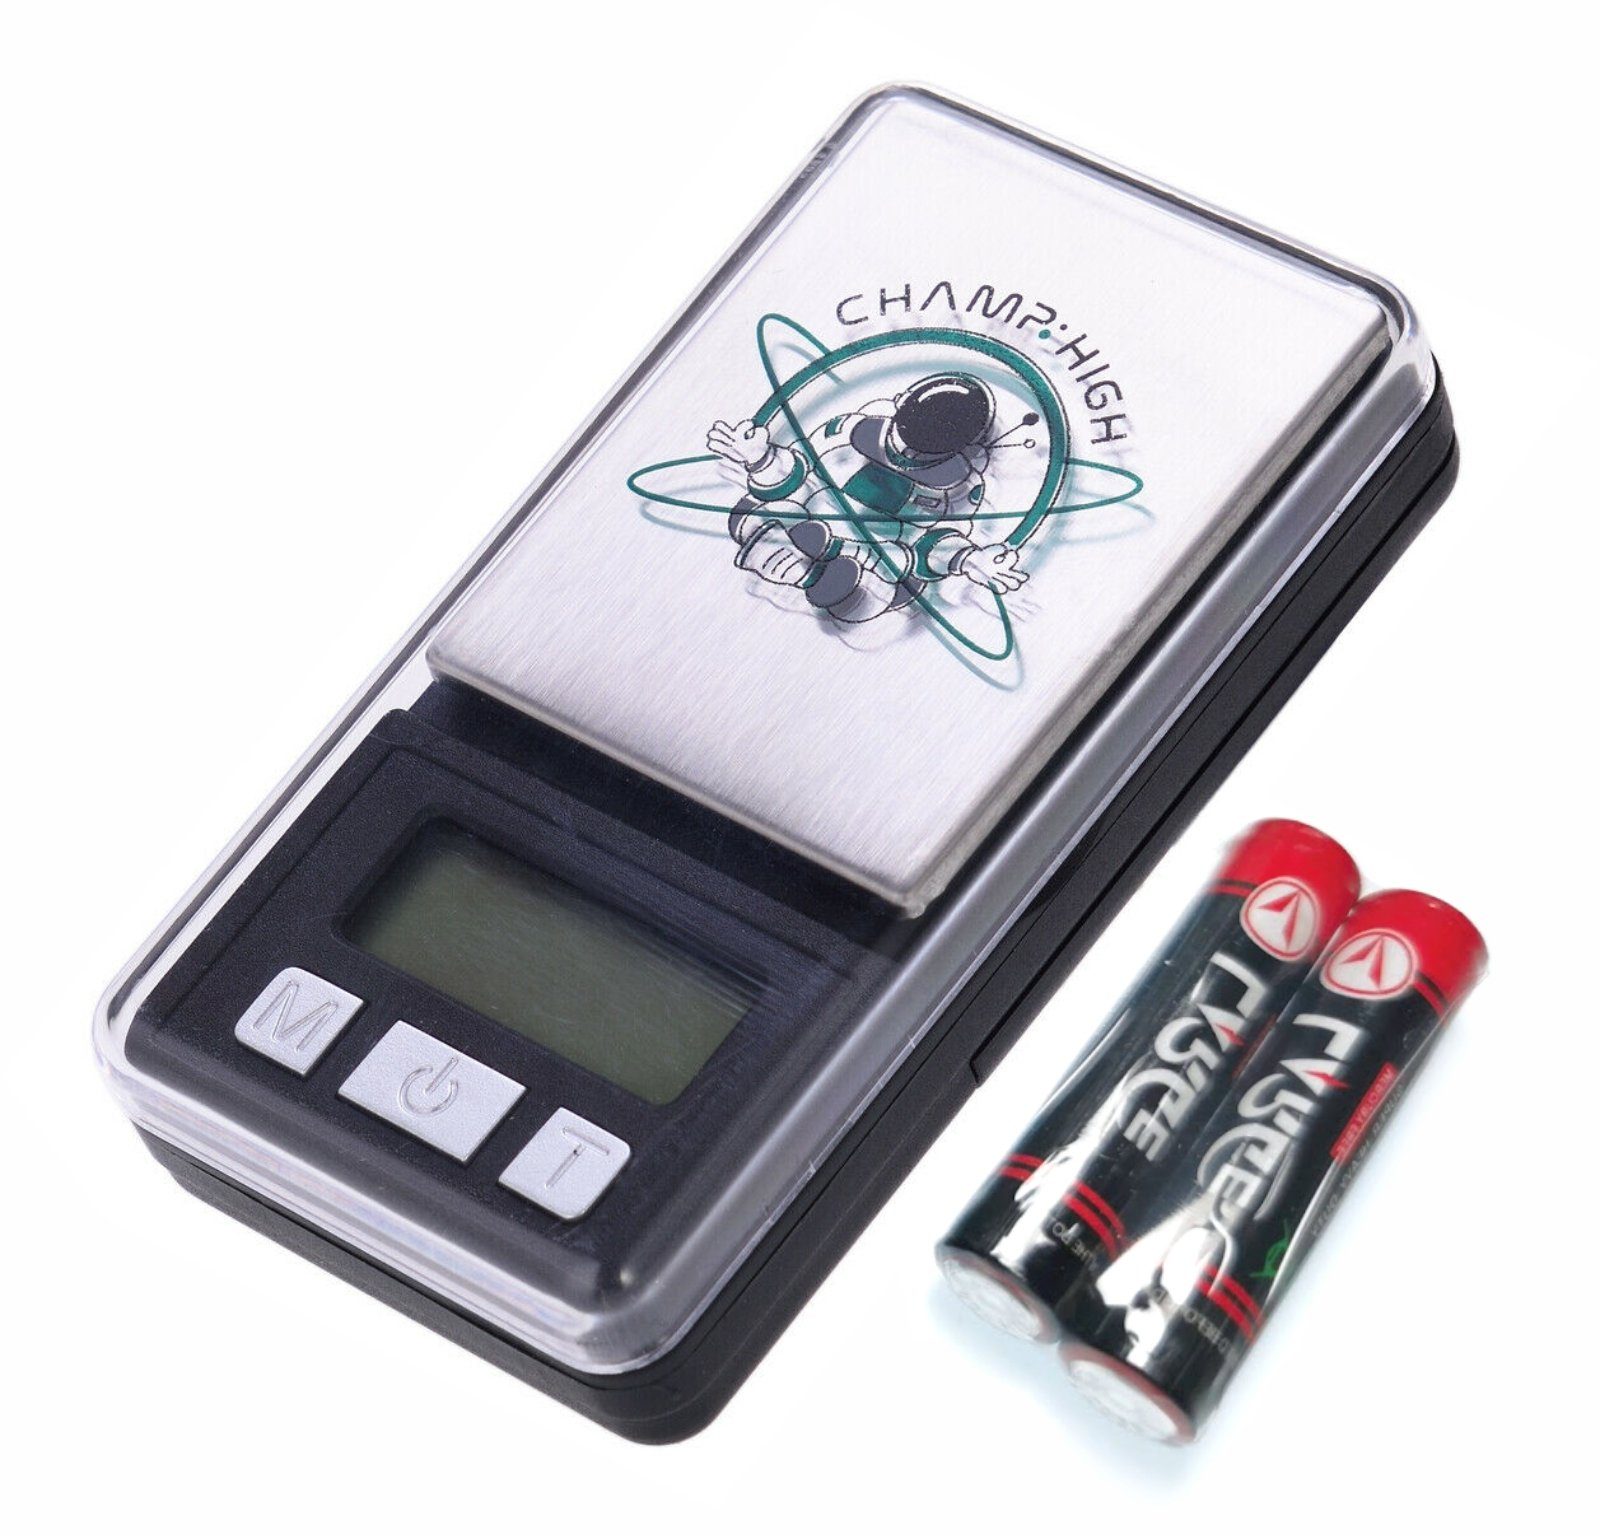 CHAMP HIGH Feinwaage Miniatur Feinwaage 200g / 0,01g Pocket Taschen MINI DIAMOND Waage